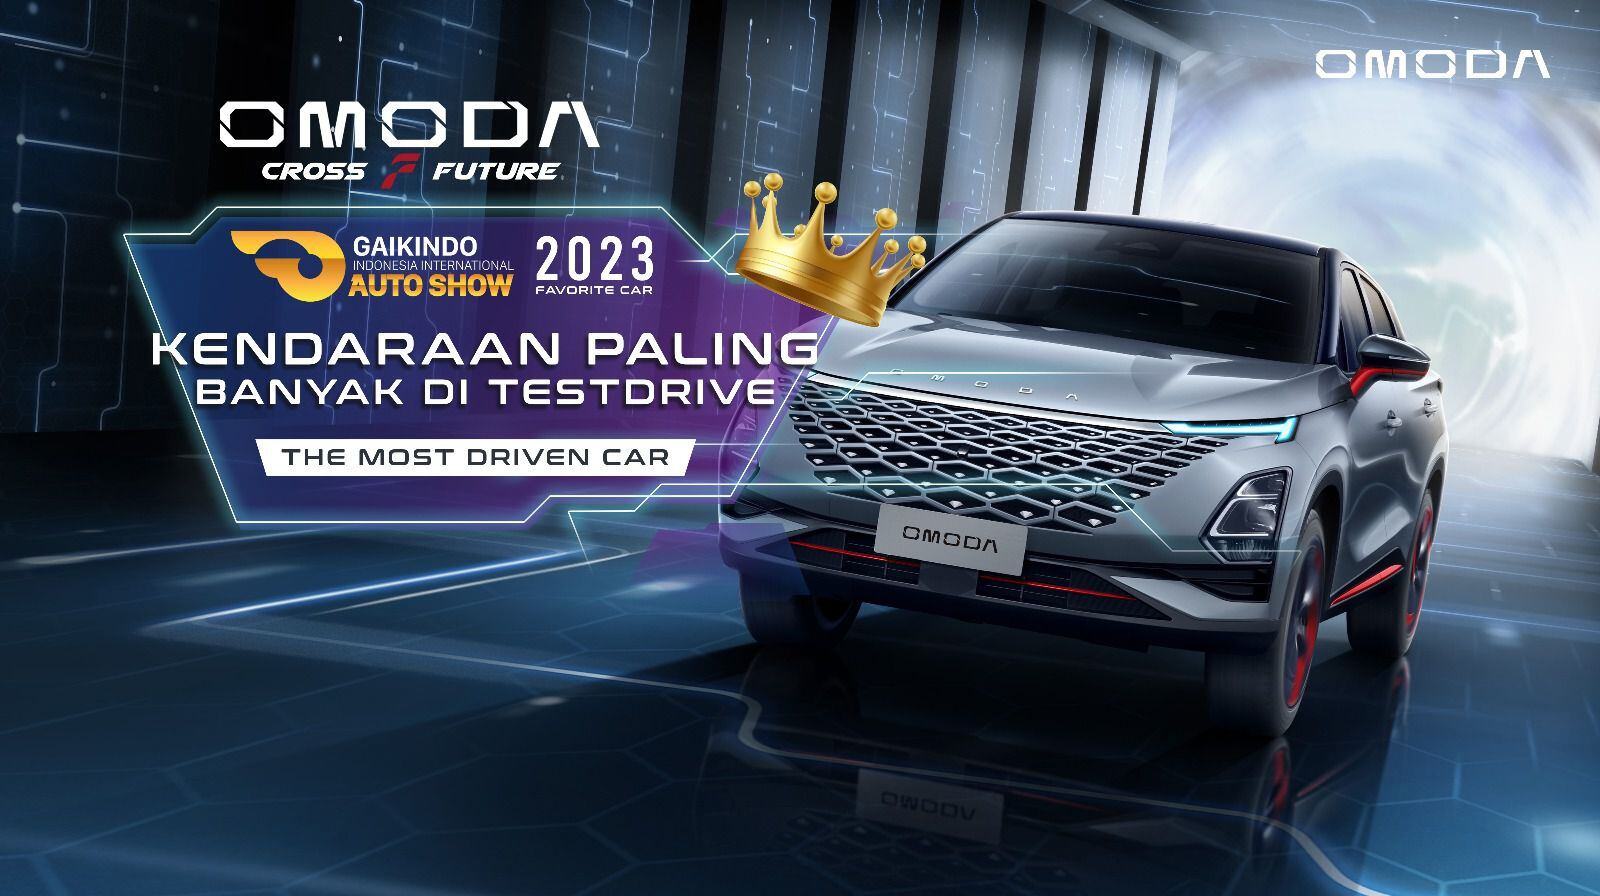 El Omoda C5 obtuvo el galardón al  Mejor SUV de pruebas, otorgado por la Asociación de la Industria Automotriz de Indonesia.